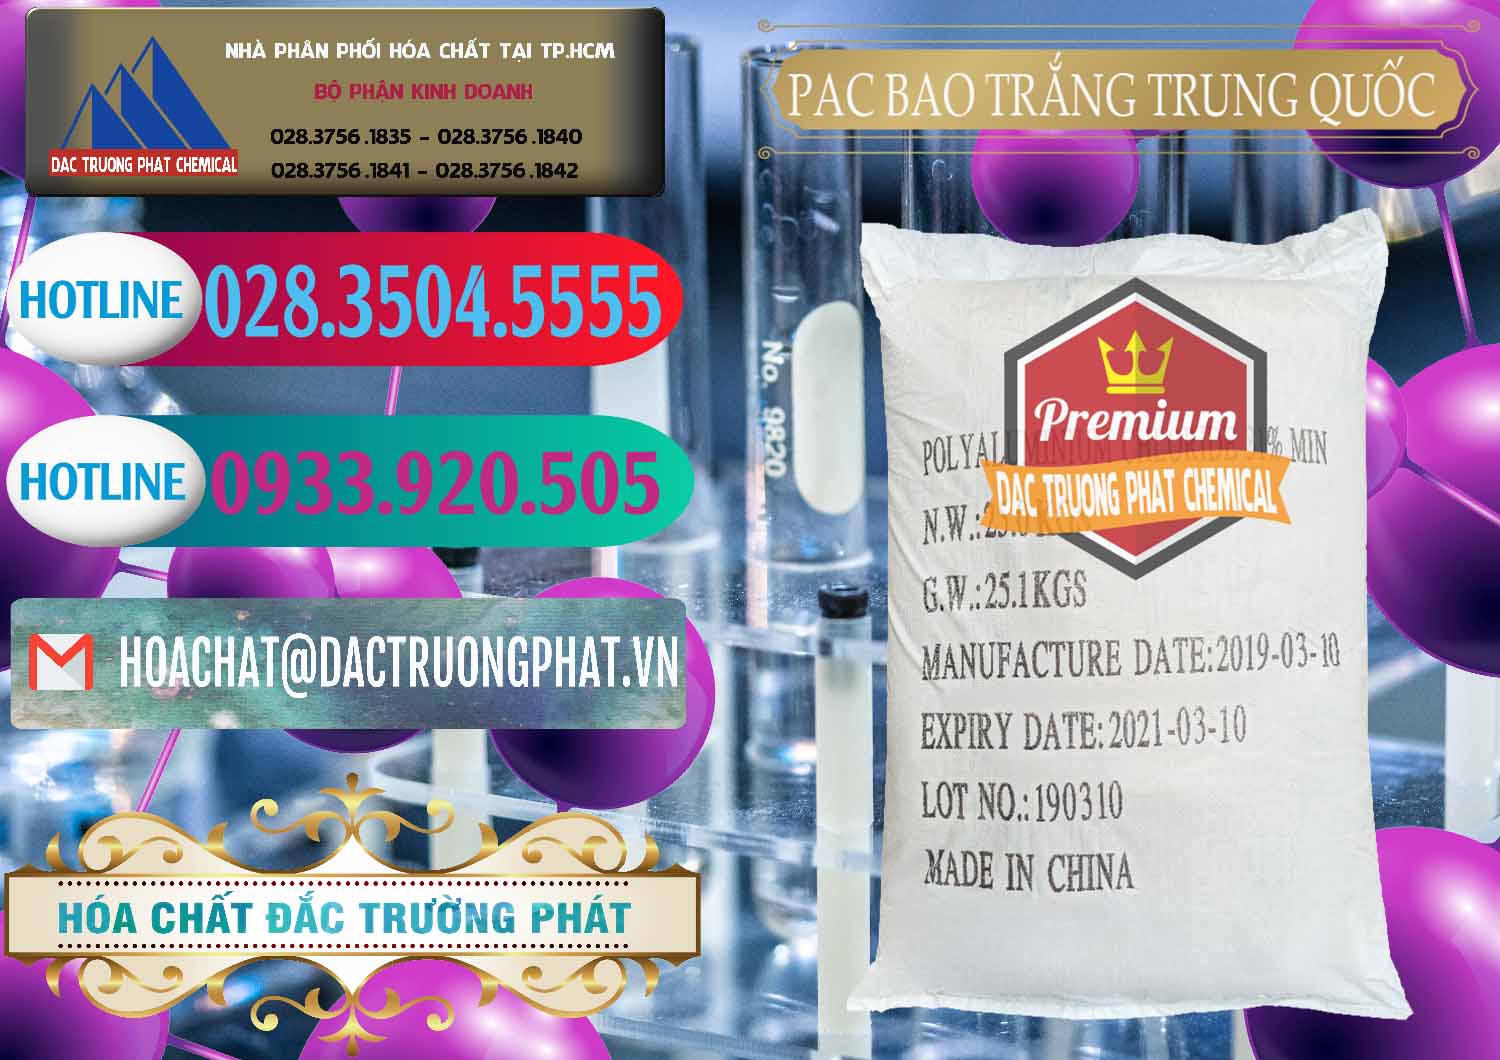 Đơn vị bán ( cung cấp ) PAC - Polyaluminium Chloride Bao Trắng Trung Quốc China - 0108 - Công ty nhập khẩu _ cung cấp hóa chất tại TP.HCM - truongphat.vn